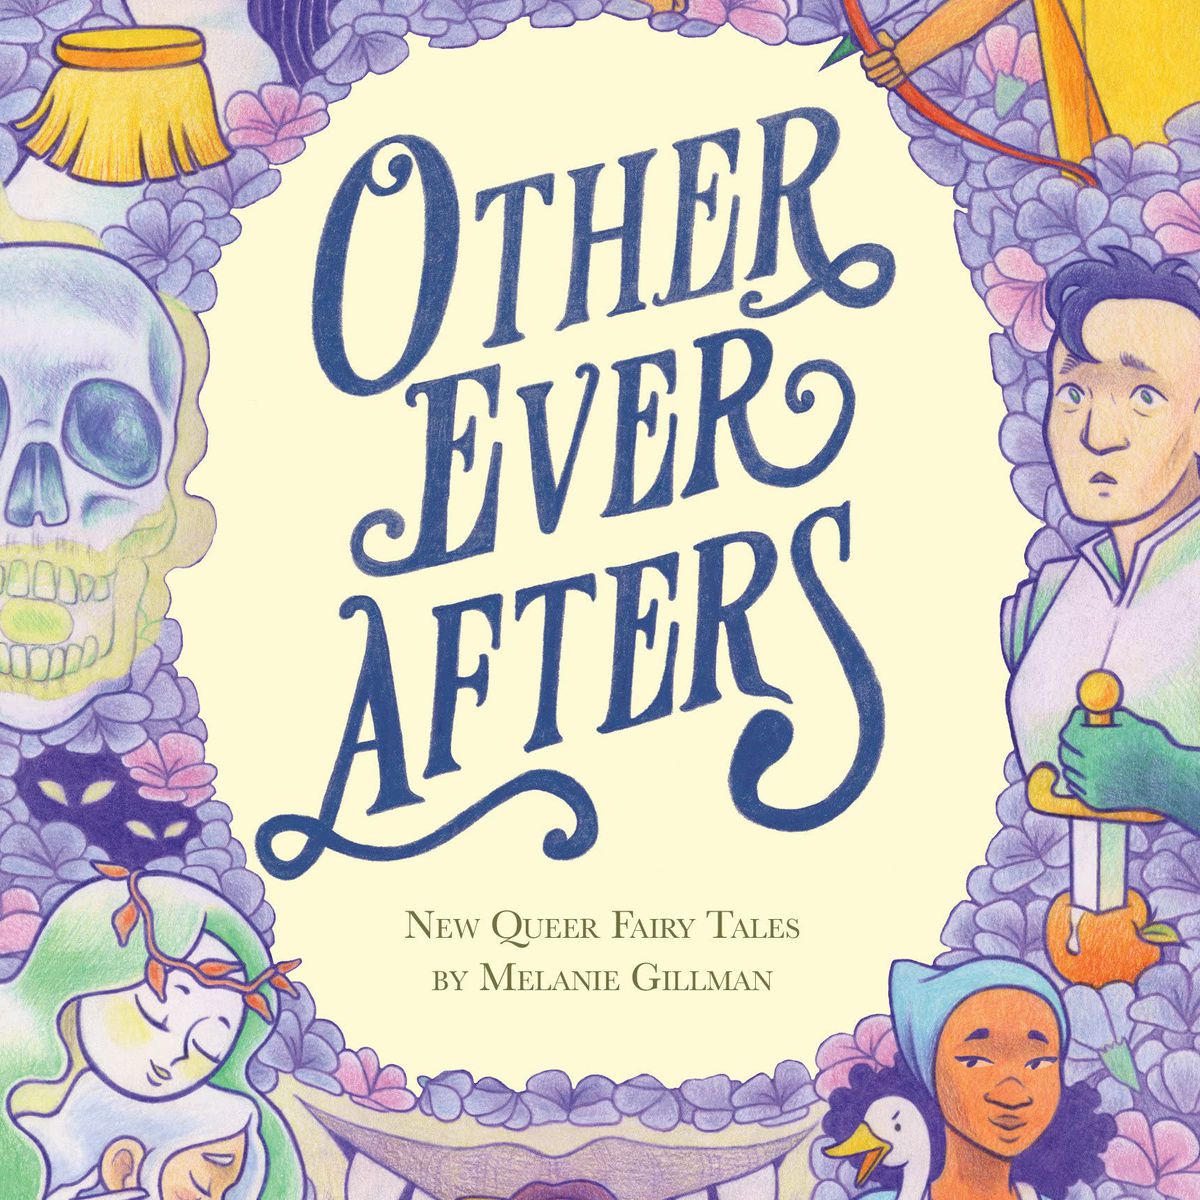 La copertina del libro di Melanie Gillman's Other Ever Afters, con una serie di personaggi fiabeschi in un montaggio attorno al titolo